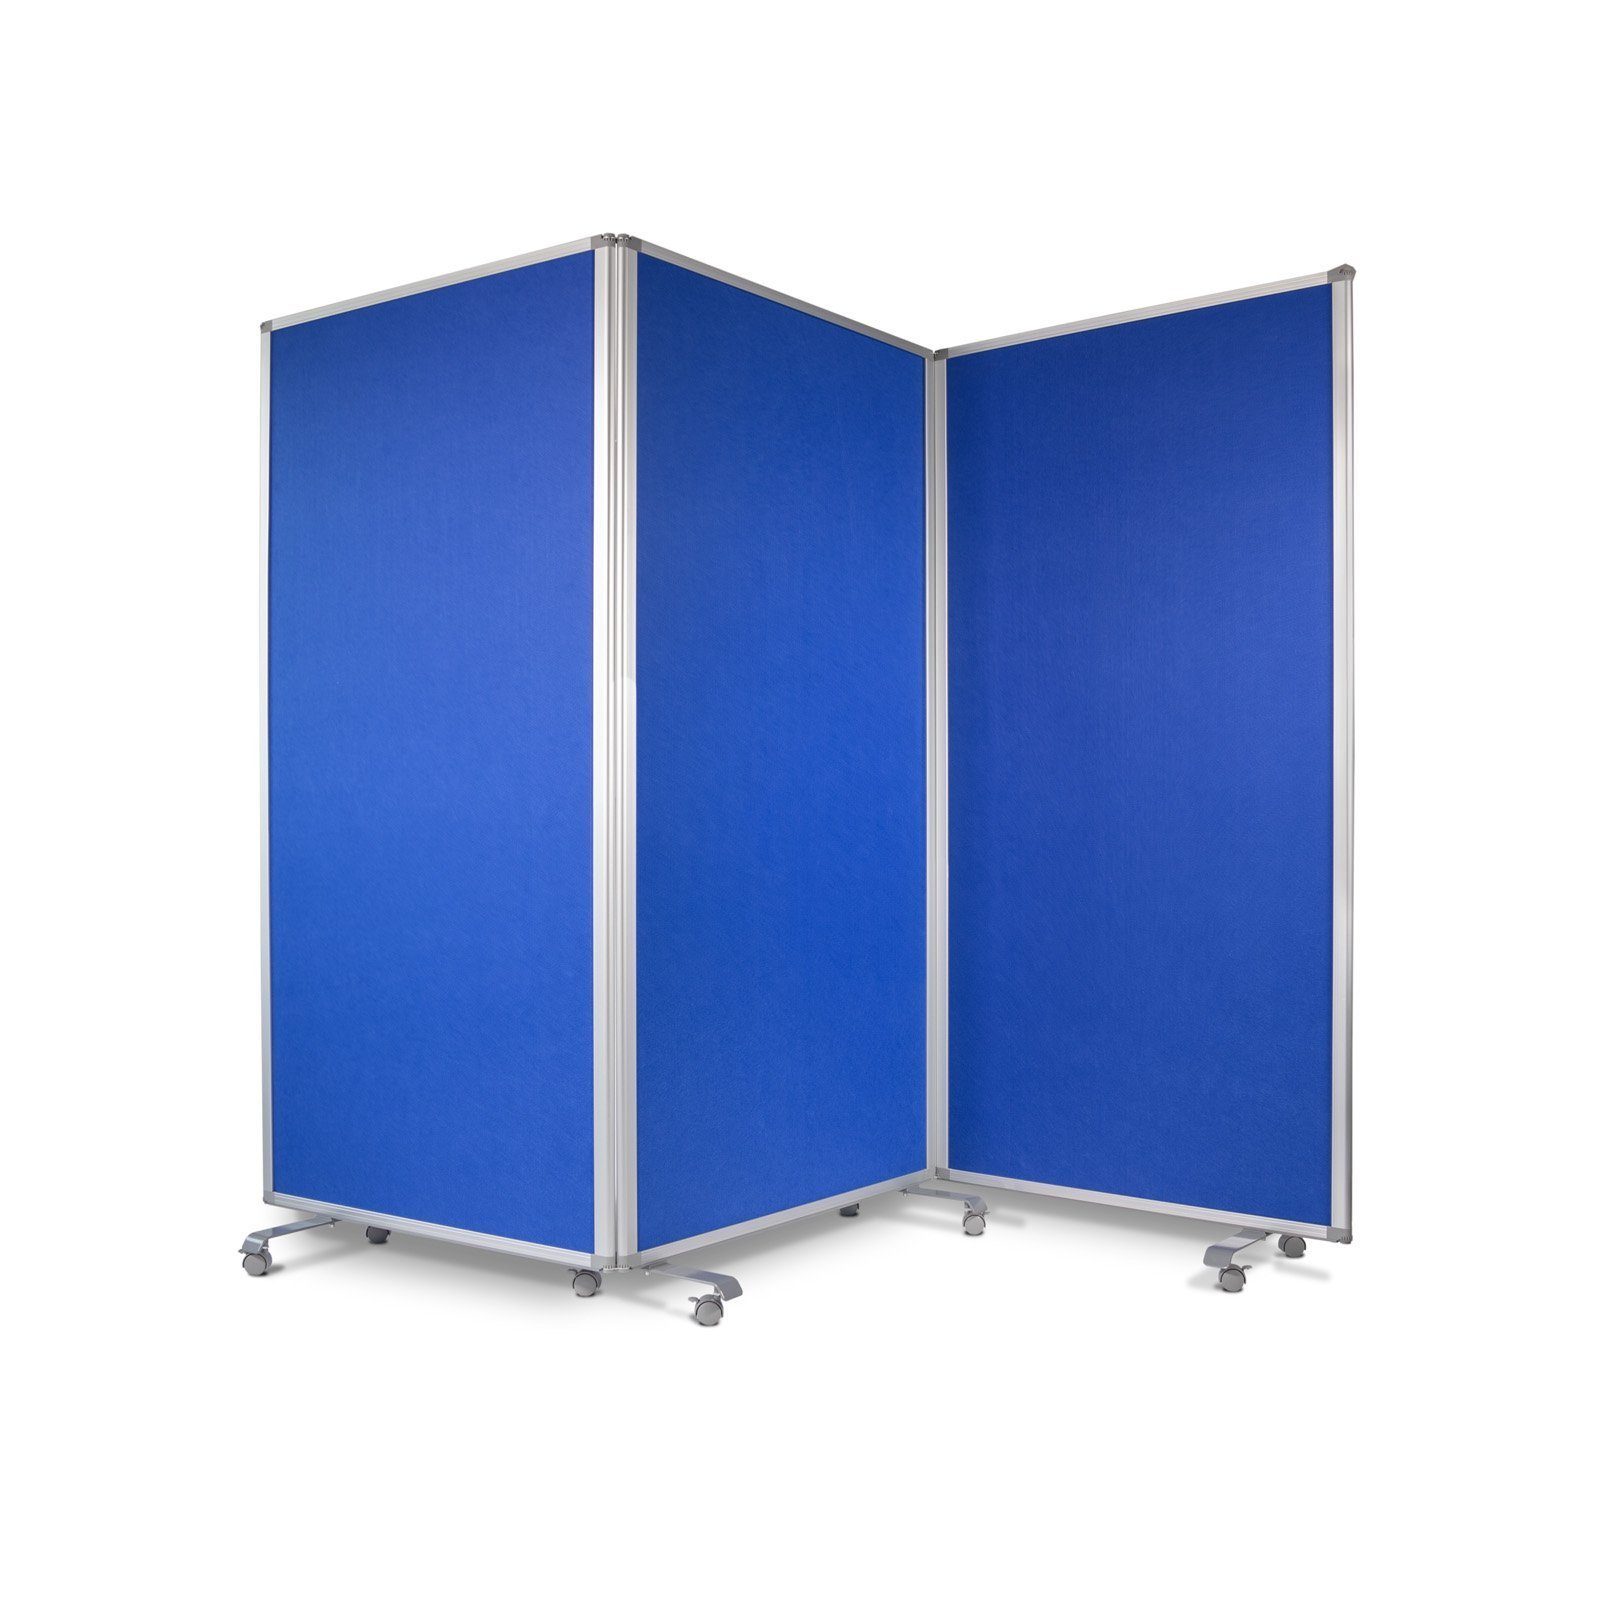 Master of Boards Stellwand Filz-Trennwand, Trennwand erhältlich in 2 Farben & 2 Größen (3 St) Blau